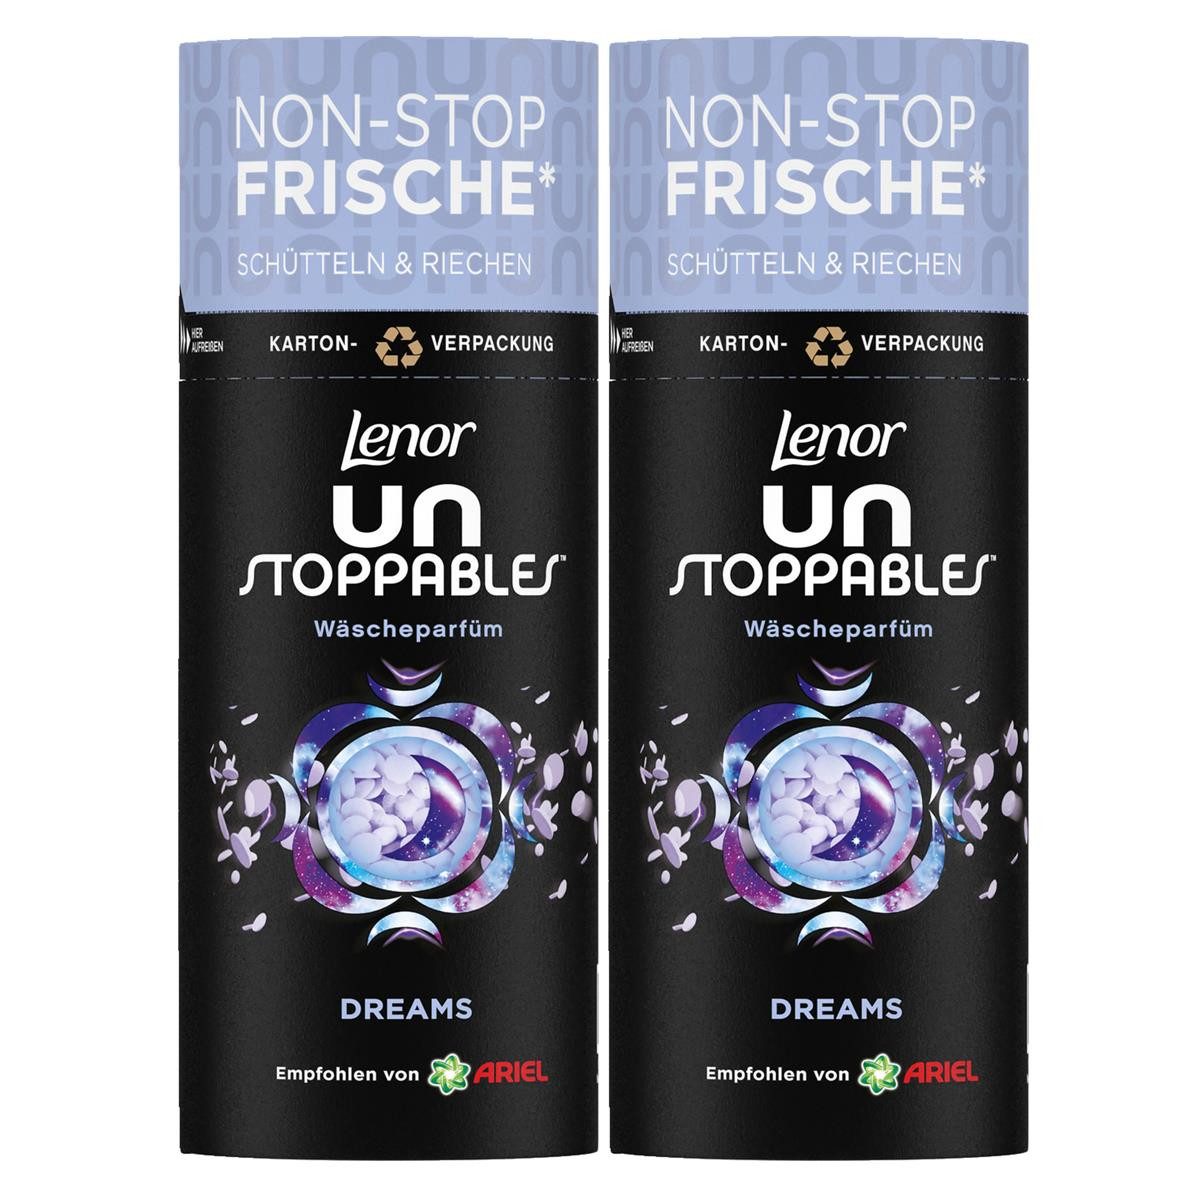 LENOR Wäscheparfüm Lenor Unstoppables Wäscheparfüm Duftperlen Dreams 160g (2er Pack)